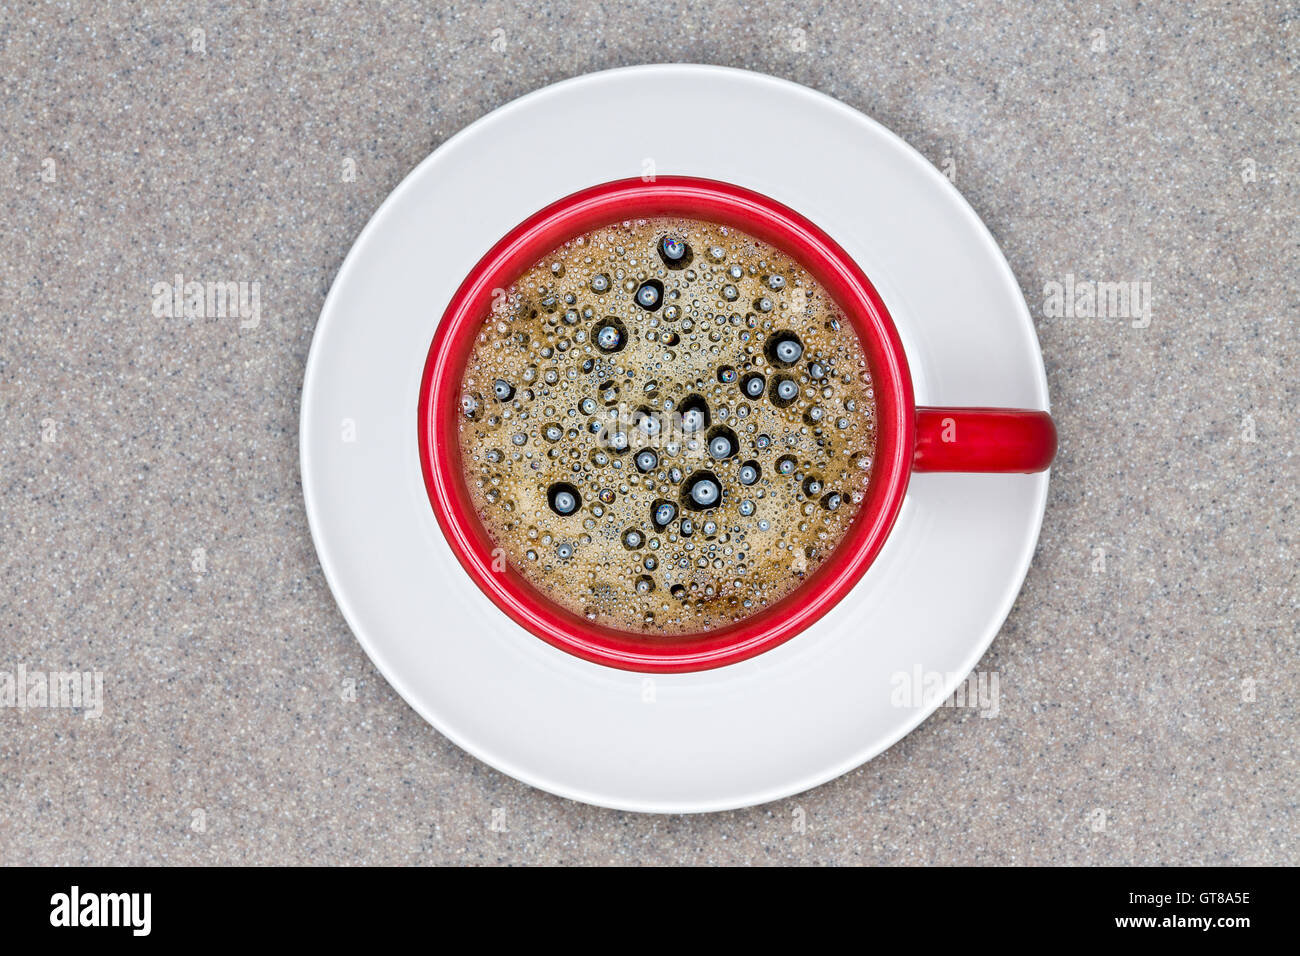 Vue aérienne de café noir chaud avec des bulles dans la tasse rouge sur le dessus de la plaque blanc servi sur table gris texturé. Banque D'Images